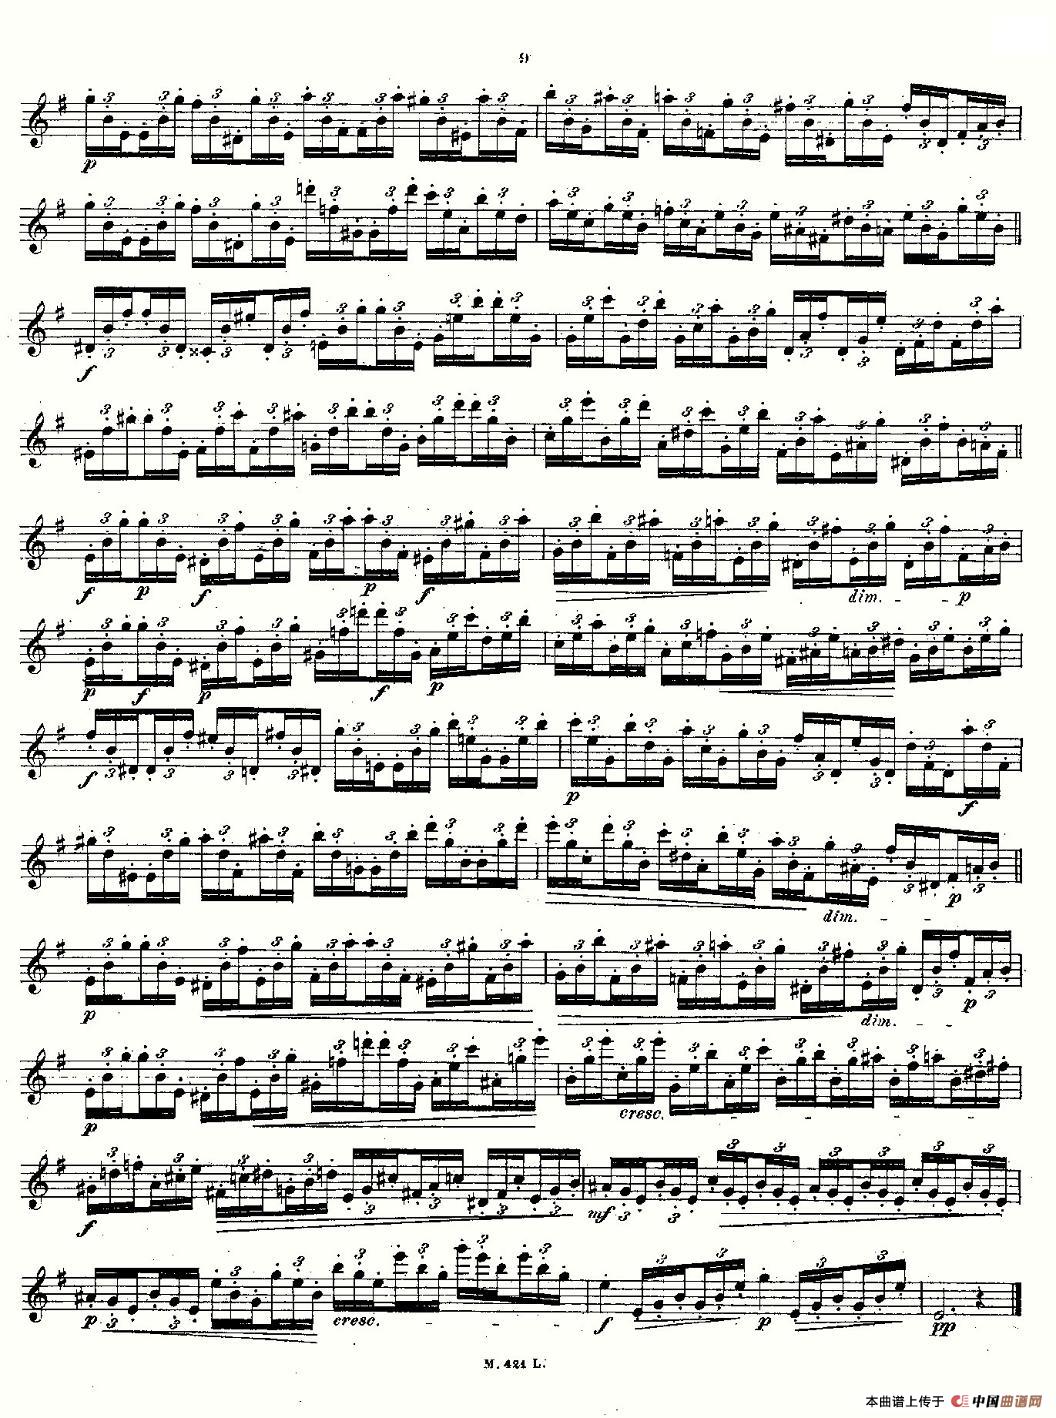 24首长笛练习曲 Op.15 之1—5长笛谱